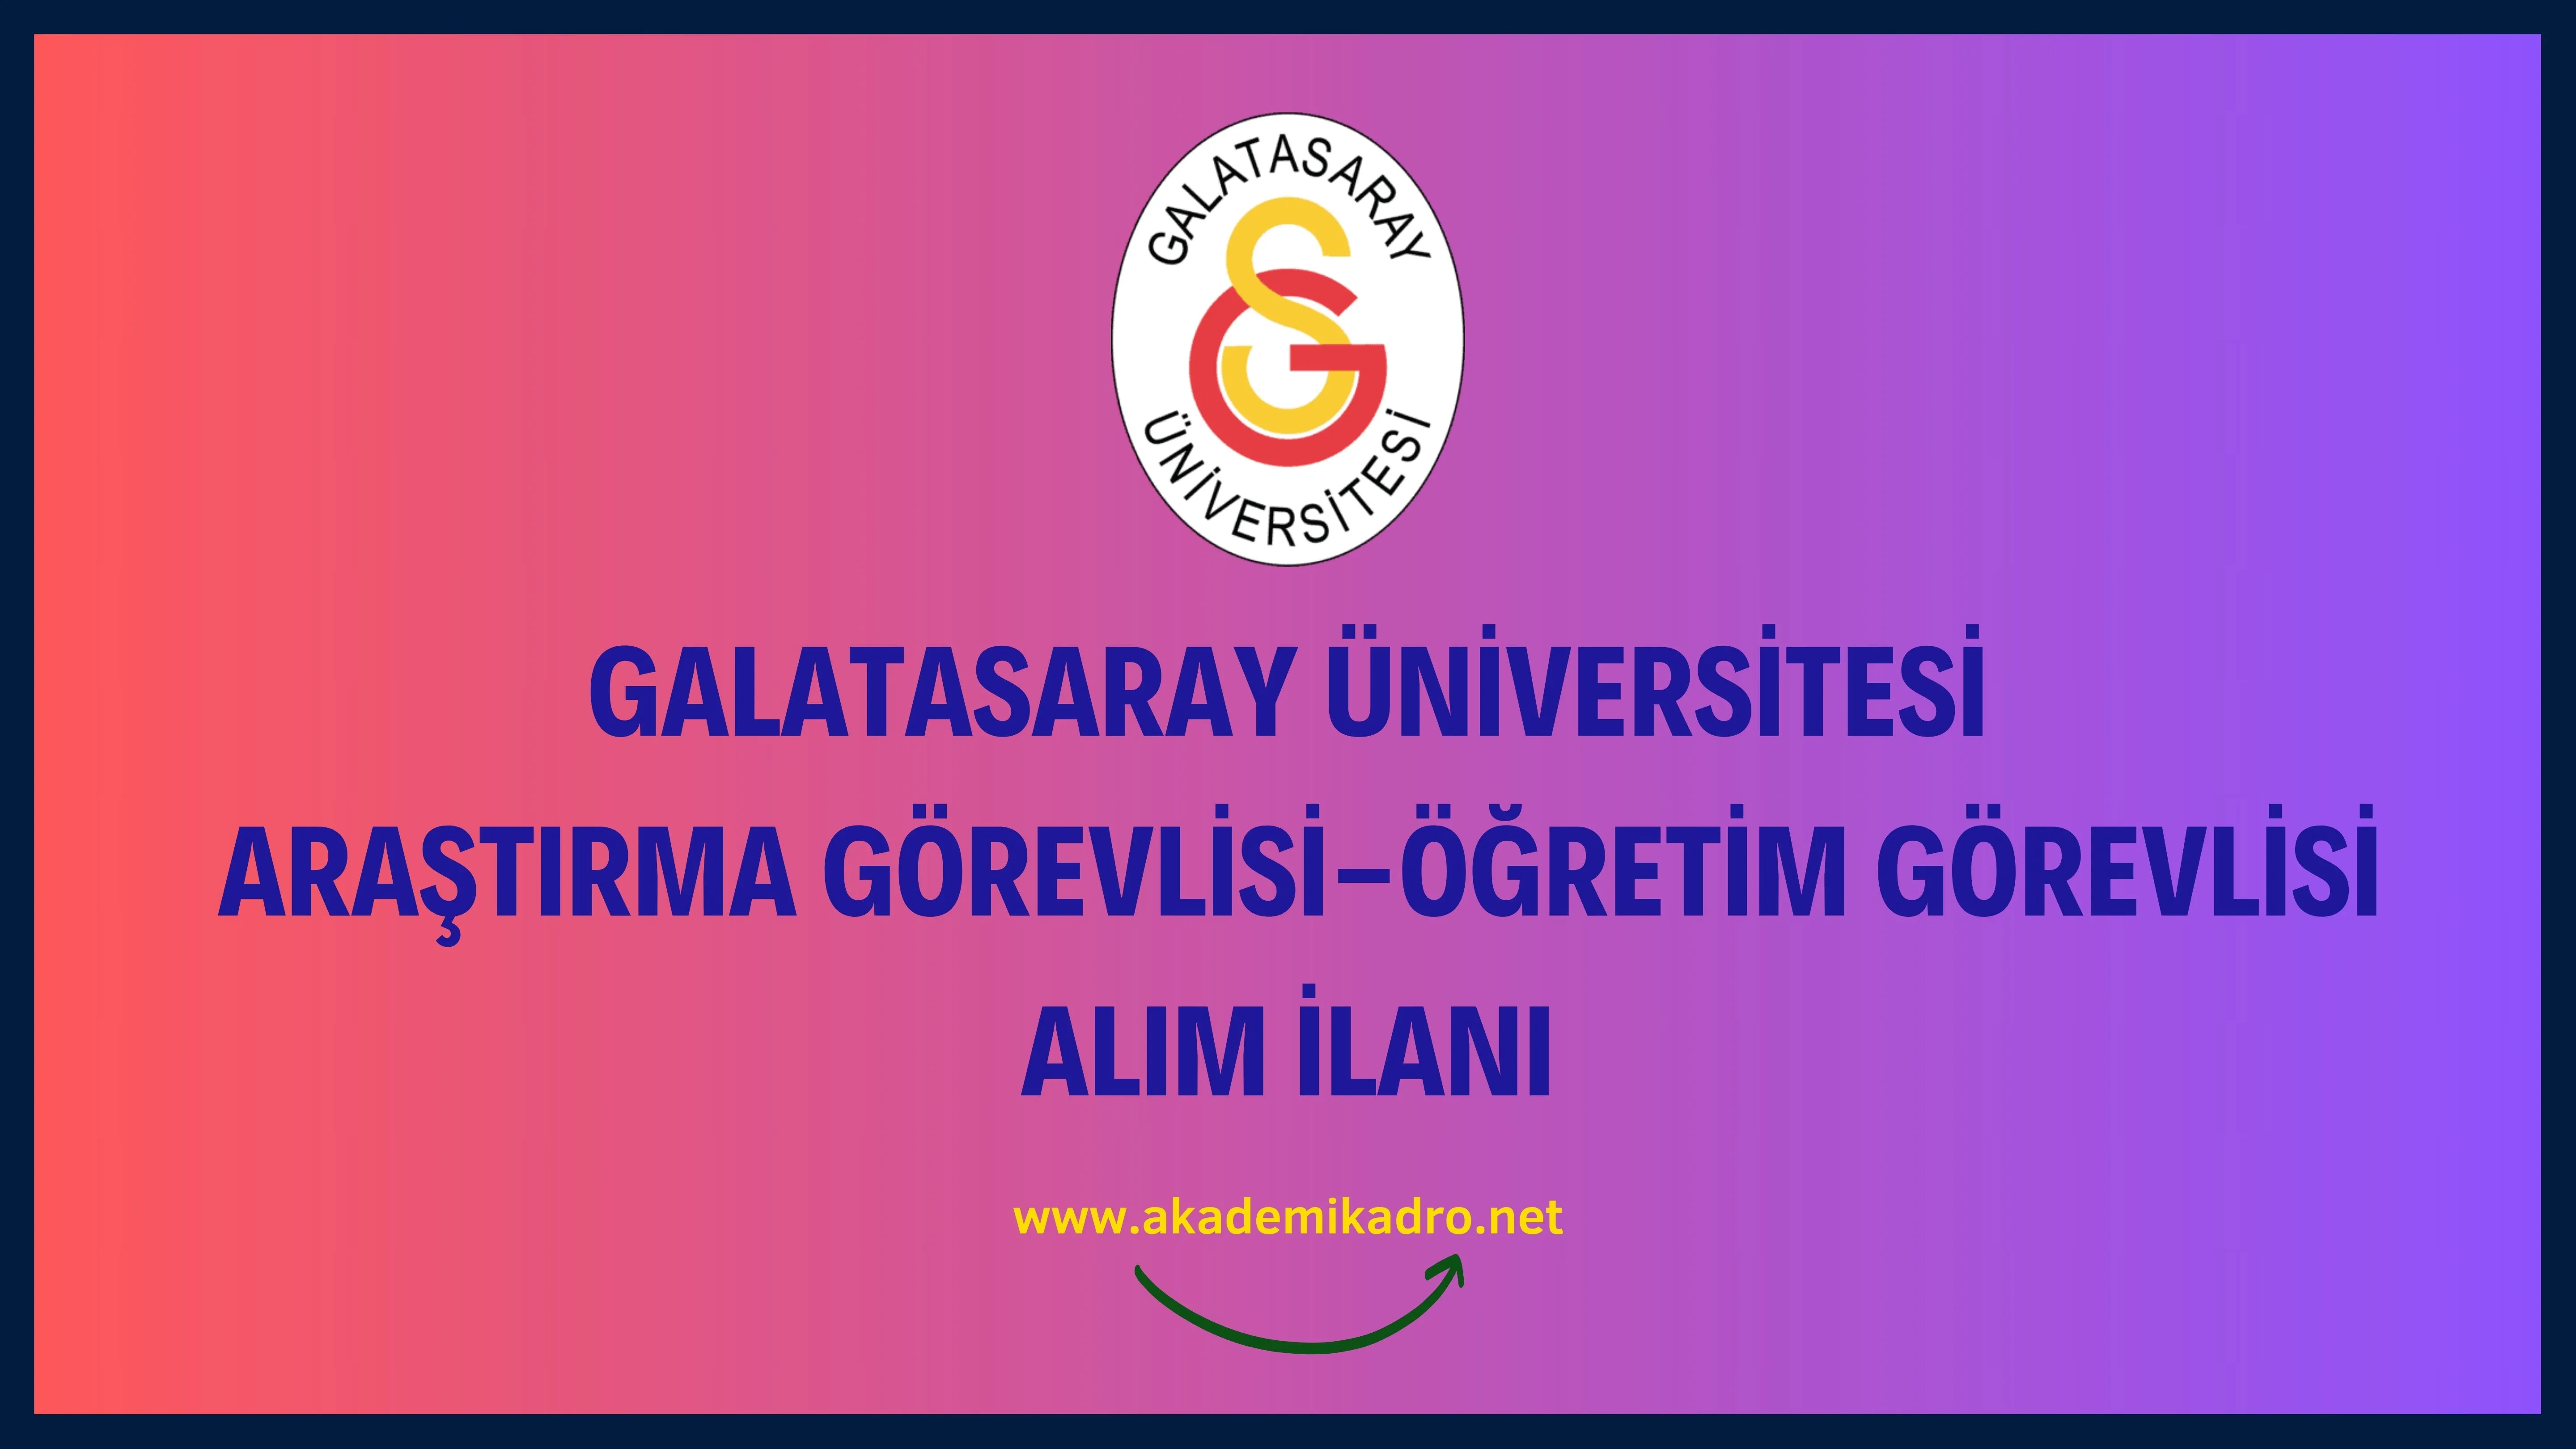 Galatasaray Üniversitesi 3 Araştırma görevlisi ve 1 Öğretim görevlisi alacak.